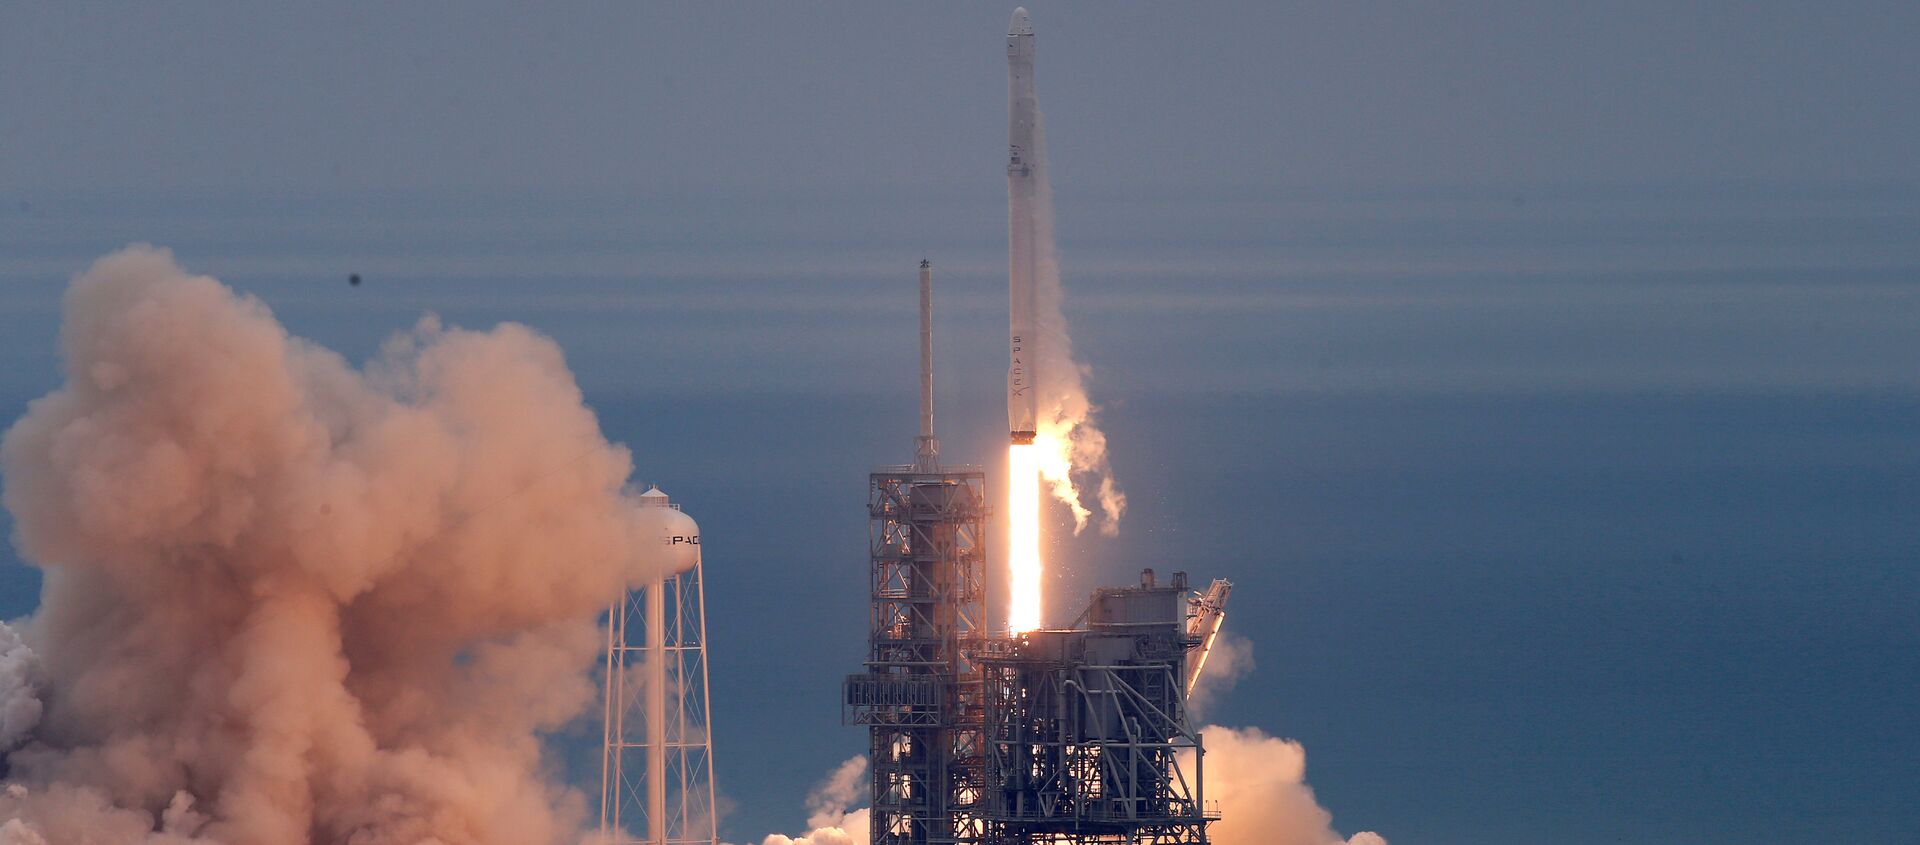 Ракета-носитель Falcon 9 с космическим кораблем Dragon стартовала с мыса Канаверал для доставки груза для МКС - Sputnik Молдова, 1920, 21.09.2020